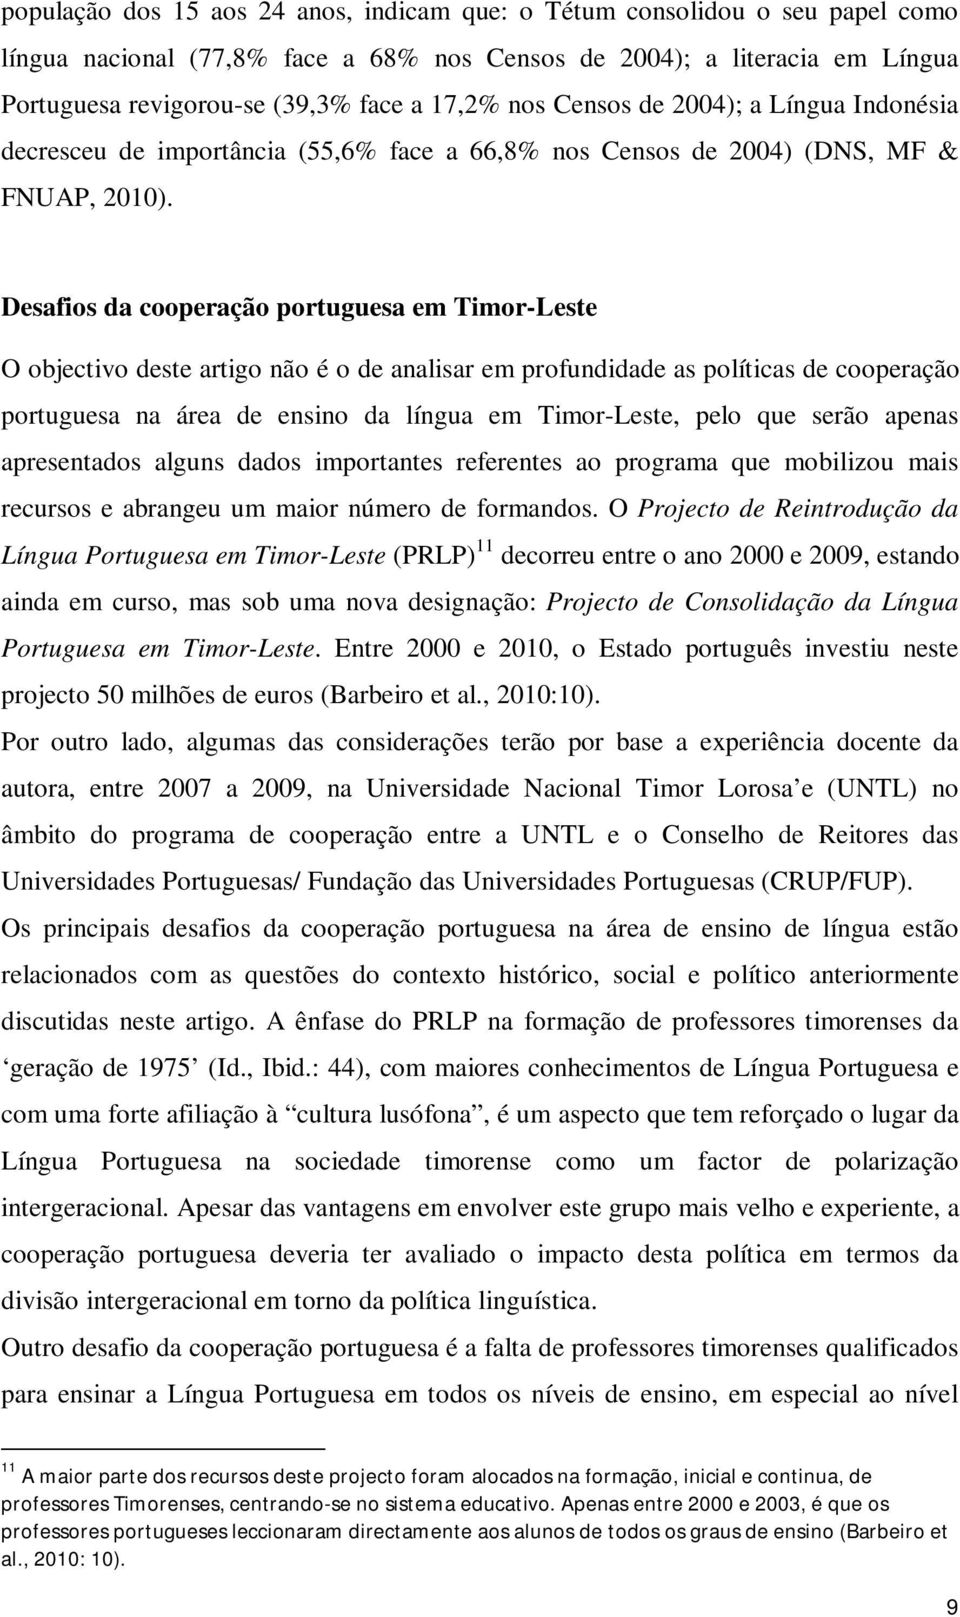 Desafios da cooperação portuguesa em Timor-Leste O objectivo deste artigo não é o de analisar em profundidade as políticas de cooperação portuguesa na área de ensino da língua em Timor-Leste, pelo